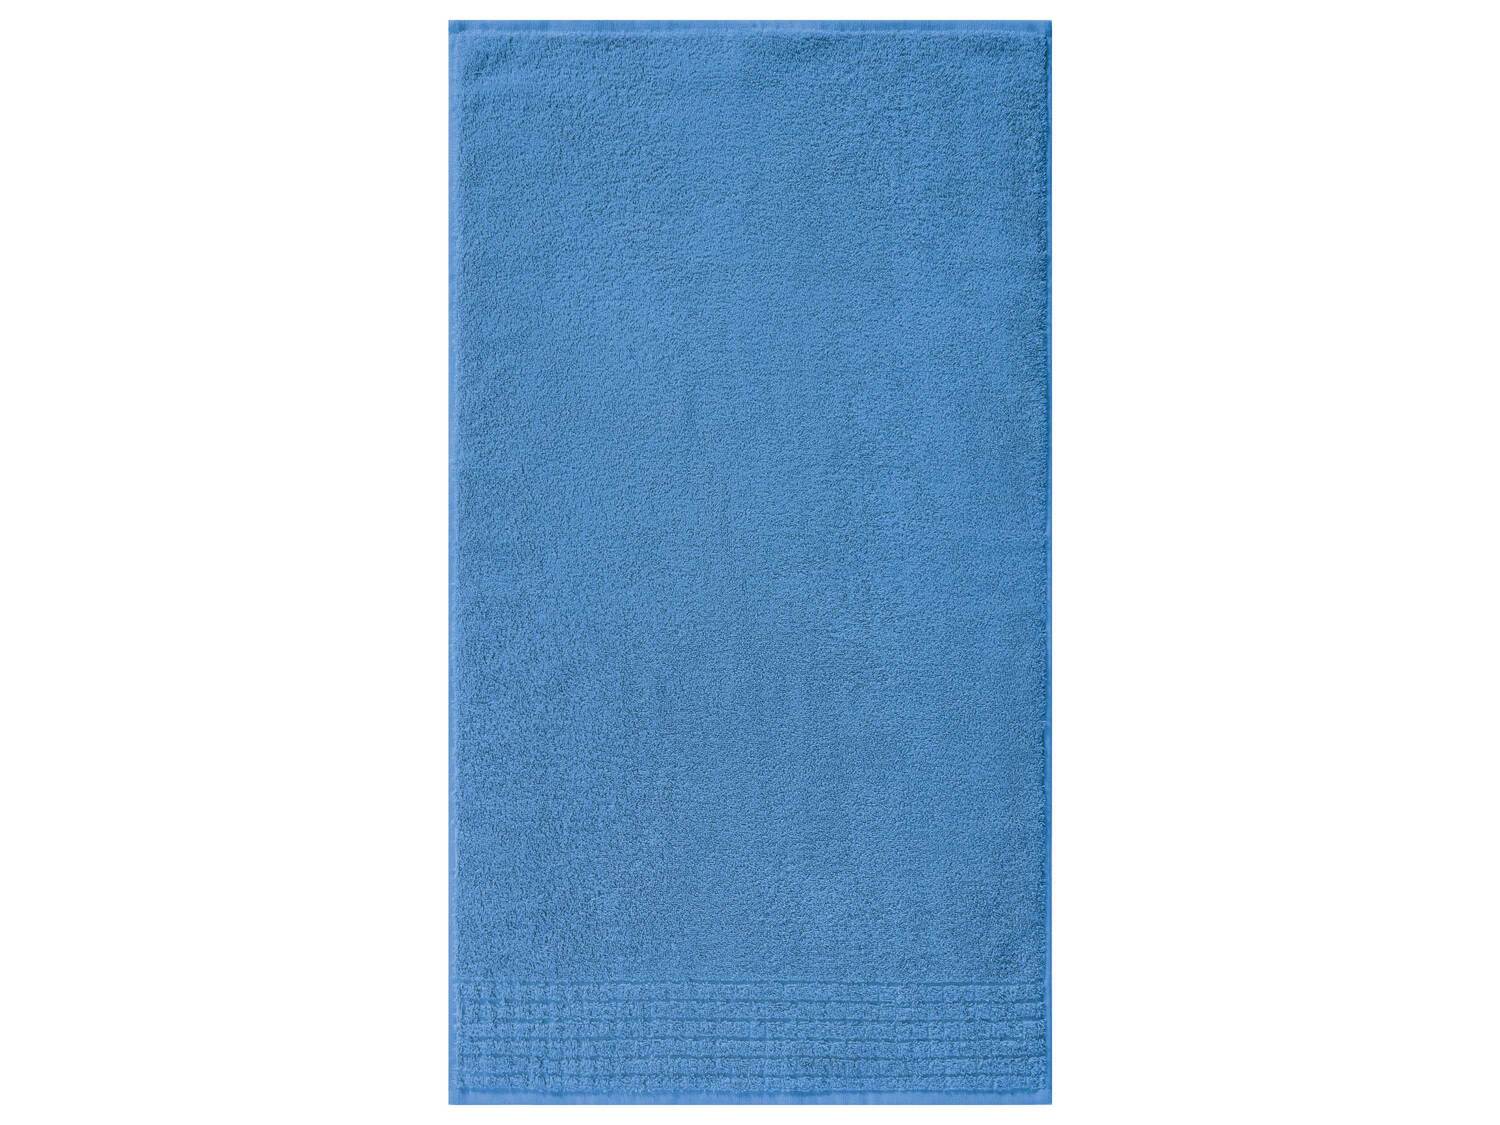 Ręcznik 70 x 130 cm Miomare, cena 19,99 PLN 
6 kolorów do wyboru 
- 100% bawełny
- ...